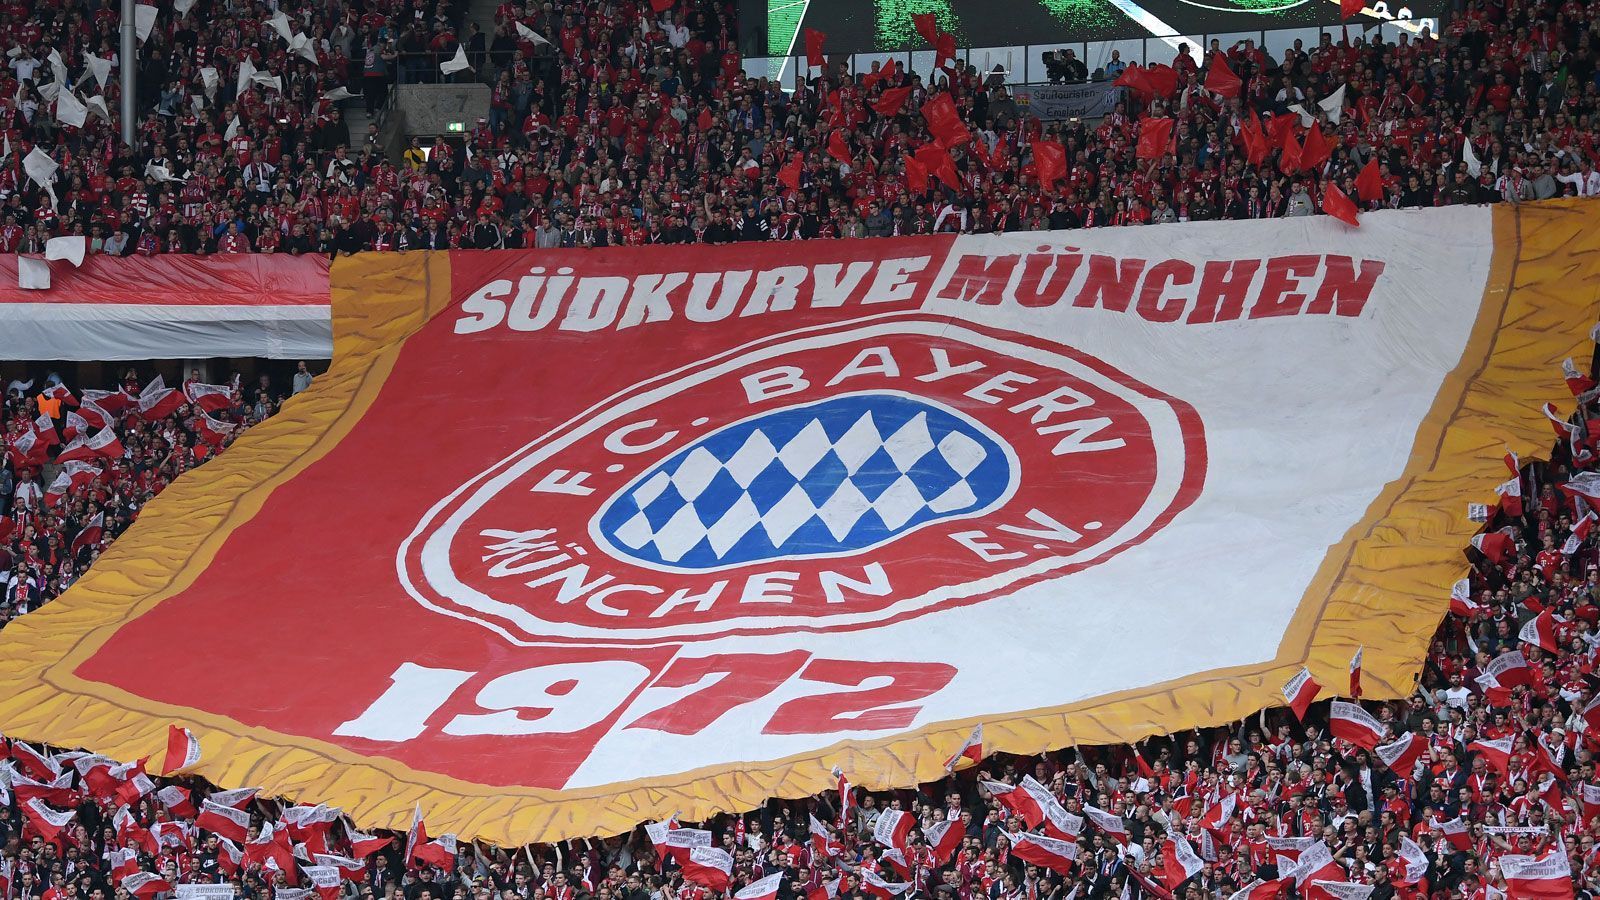 
                <strong>FC Bayern München </strong><br>
                Erwachsene (26-64 Jahre): 60 EuroErwachsene (18-25 Jahre): 40 EuroSenioren (ab 65 Jahre): 30 EuroKinder und Jugendliche (bis 17 Jahre): 30 Euro
              